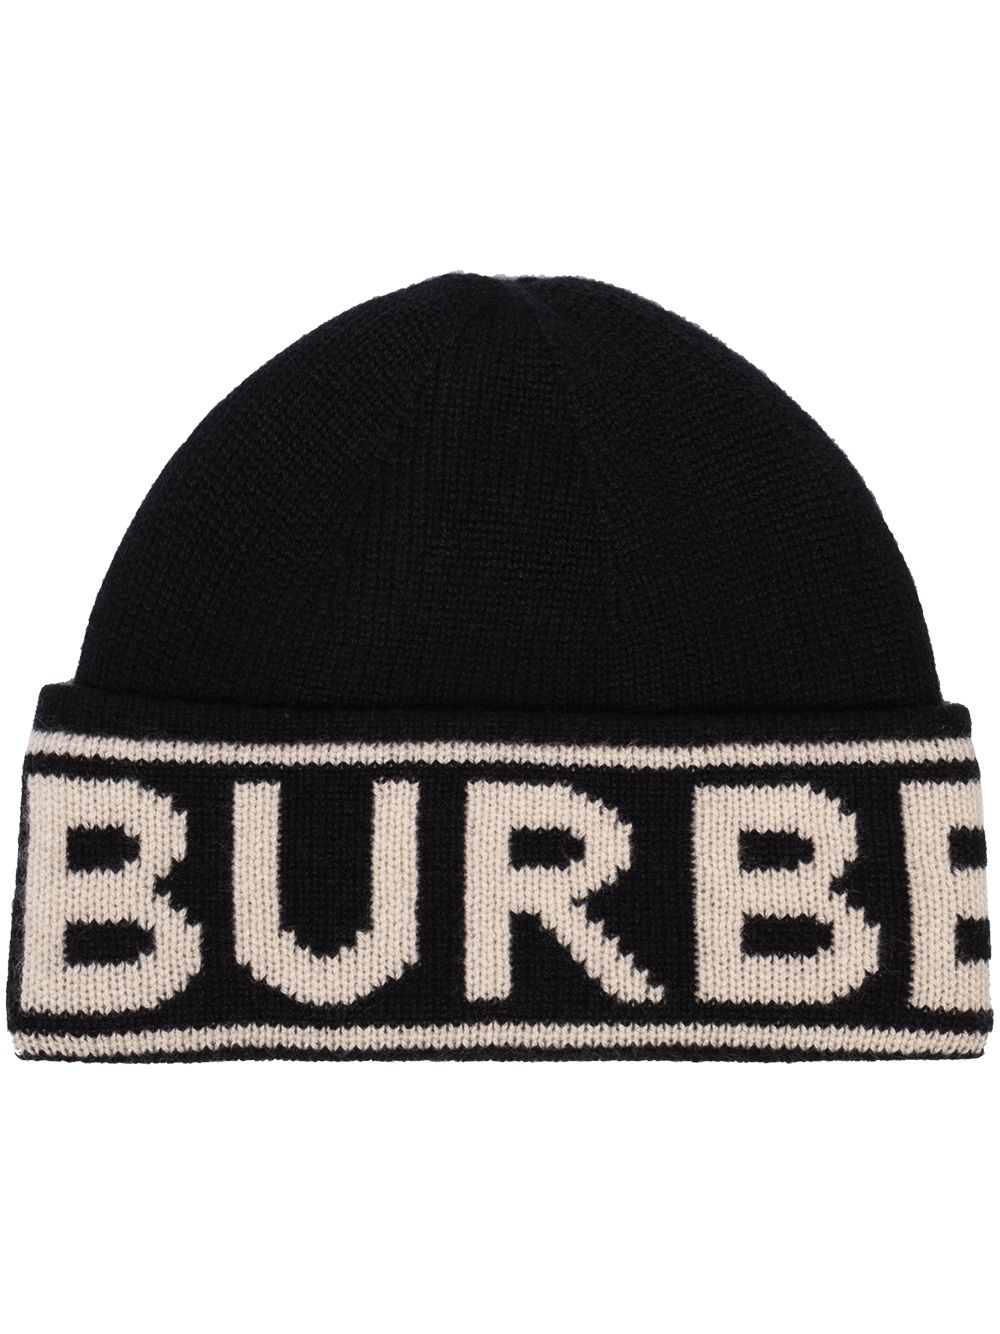 Burberry logo-intarsia Cashmere Beanie Hat - Farfetch